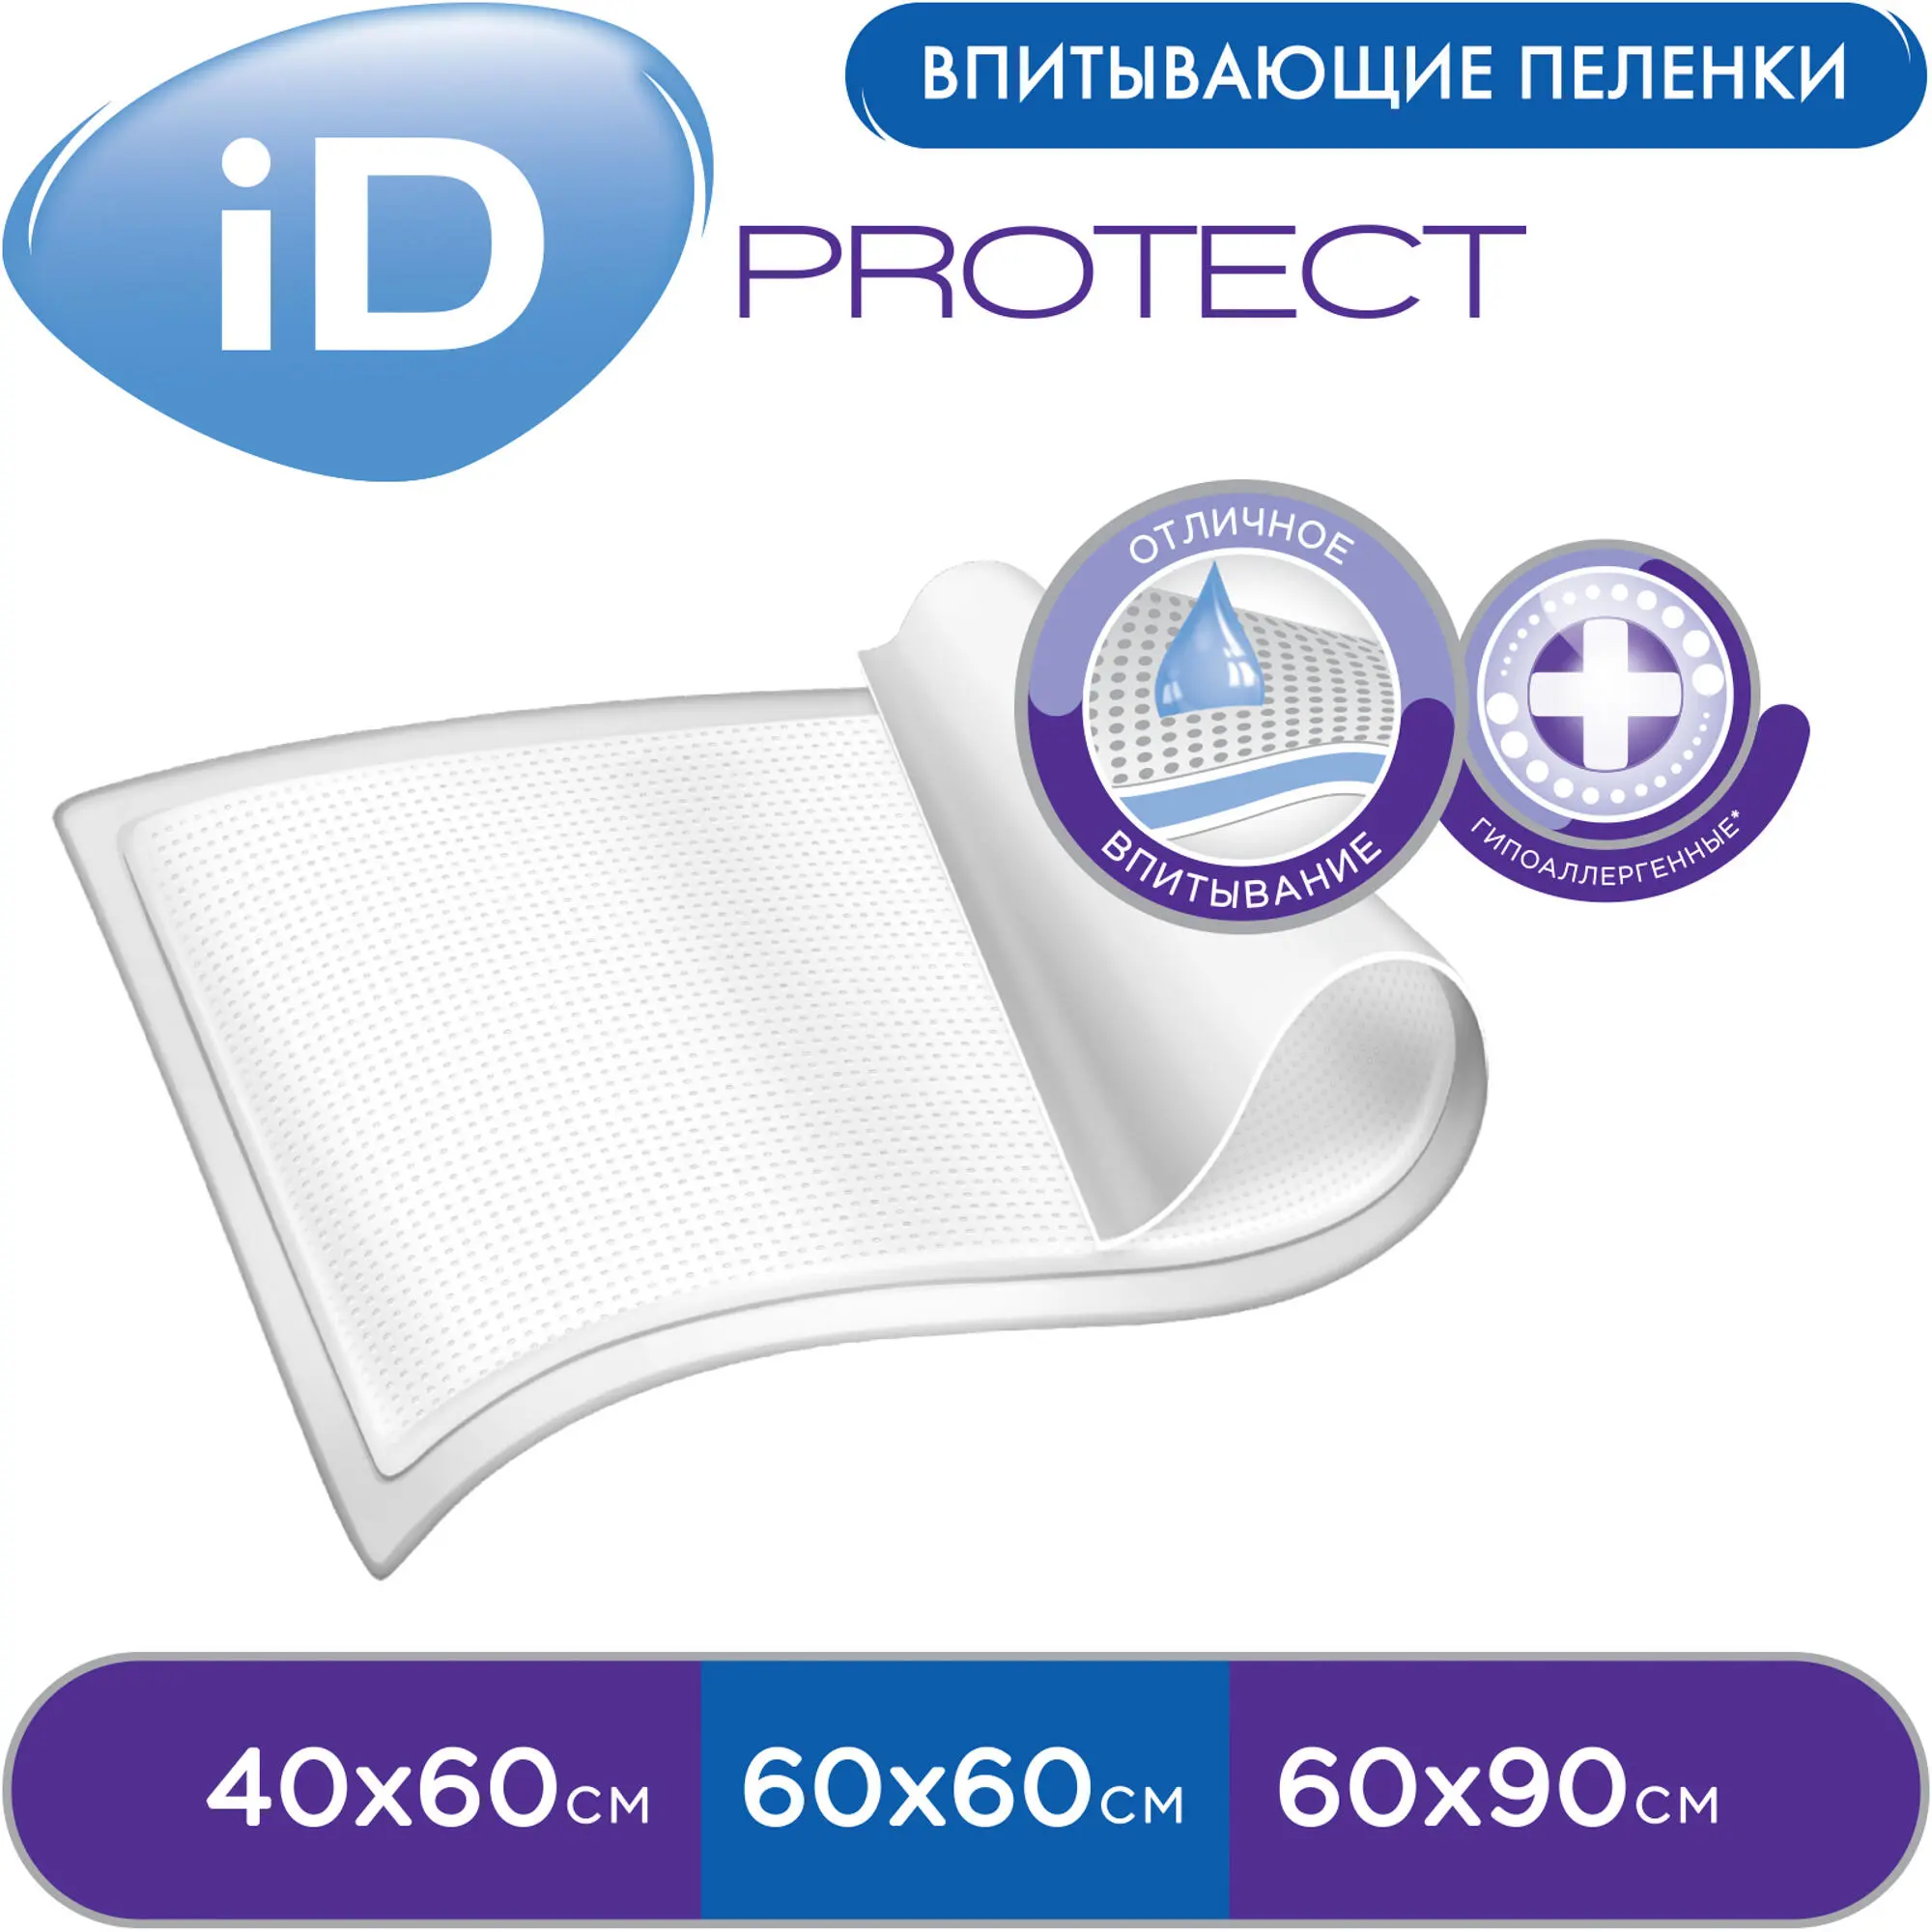 Пеленки одноразовые впитывающие для детей и взрослых iD Protect 60x60, 30 шт